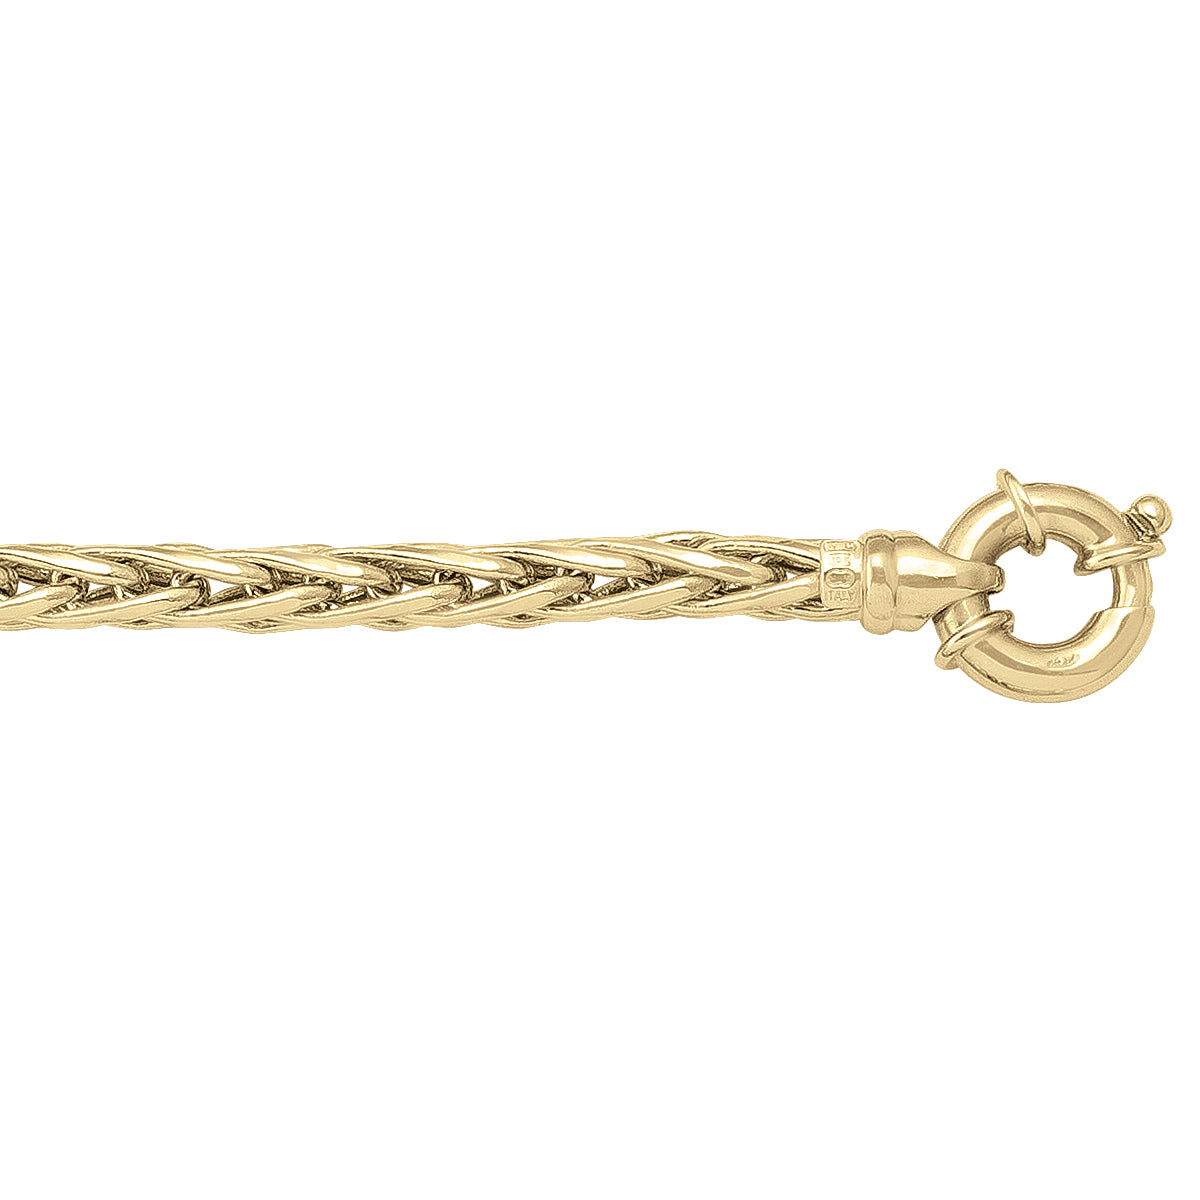 Hollow Wheat Link Bracelet in 10K Yellow Gold, 5mm W